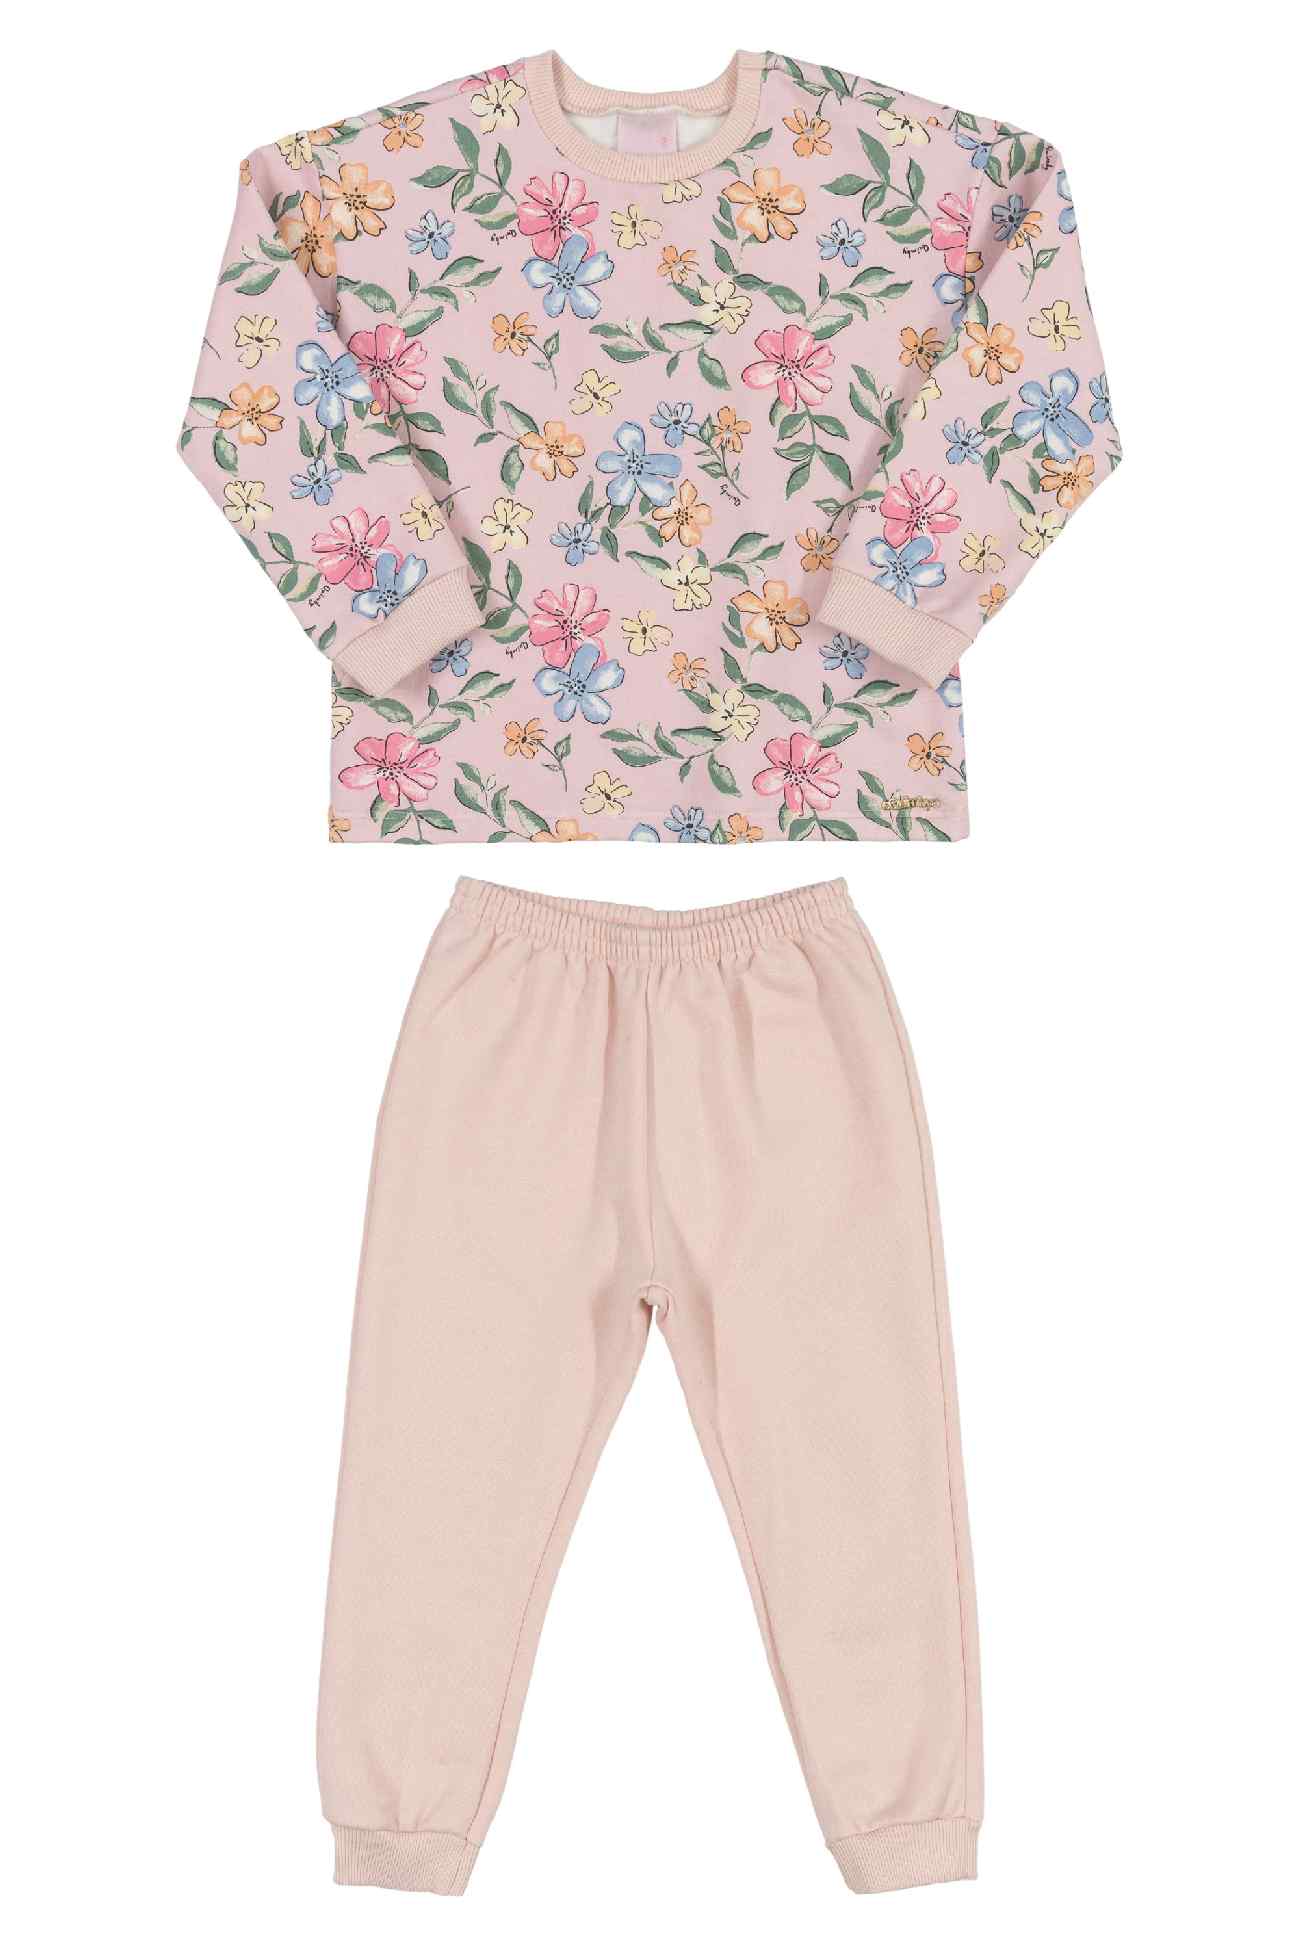 Zestaw dziewczęcy bluza + spodnie, różowy, Quimby